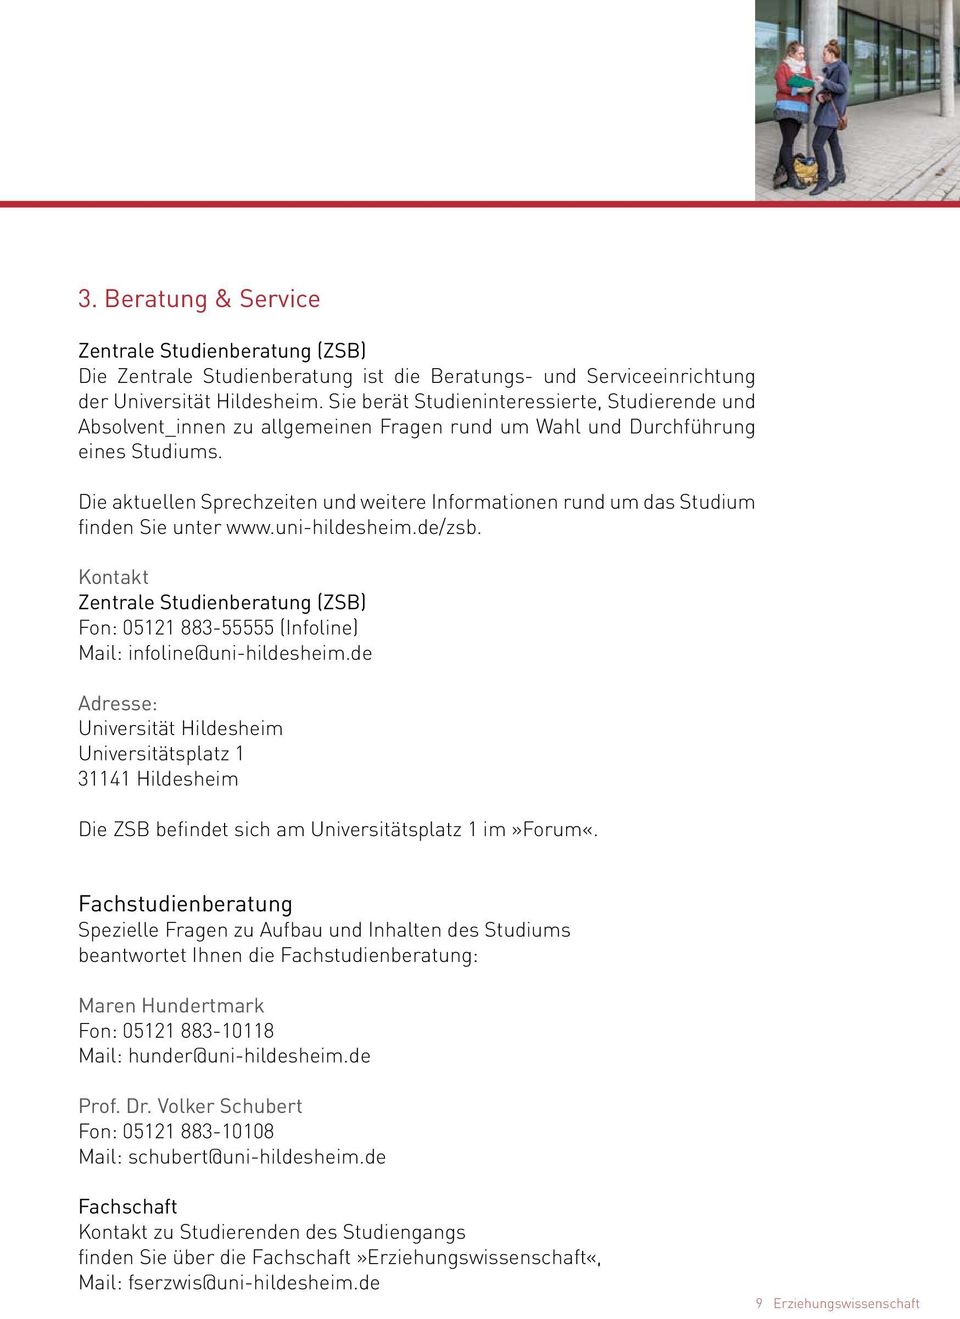 Die aktuellen Sprechzeiten und weitere Informationen rund um das Studium finden Sie unter www.uni-hildesheim.de/zsb.